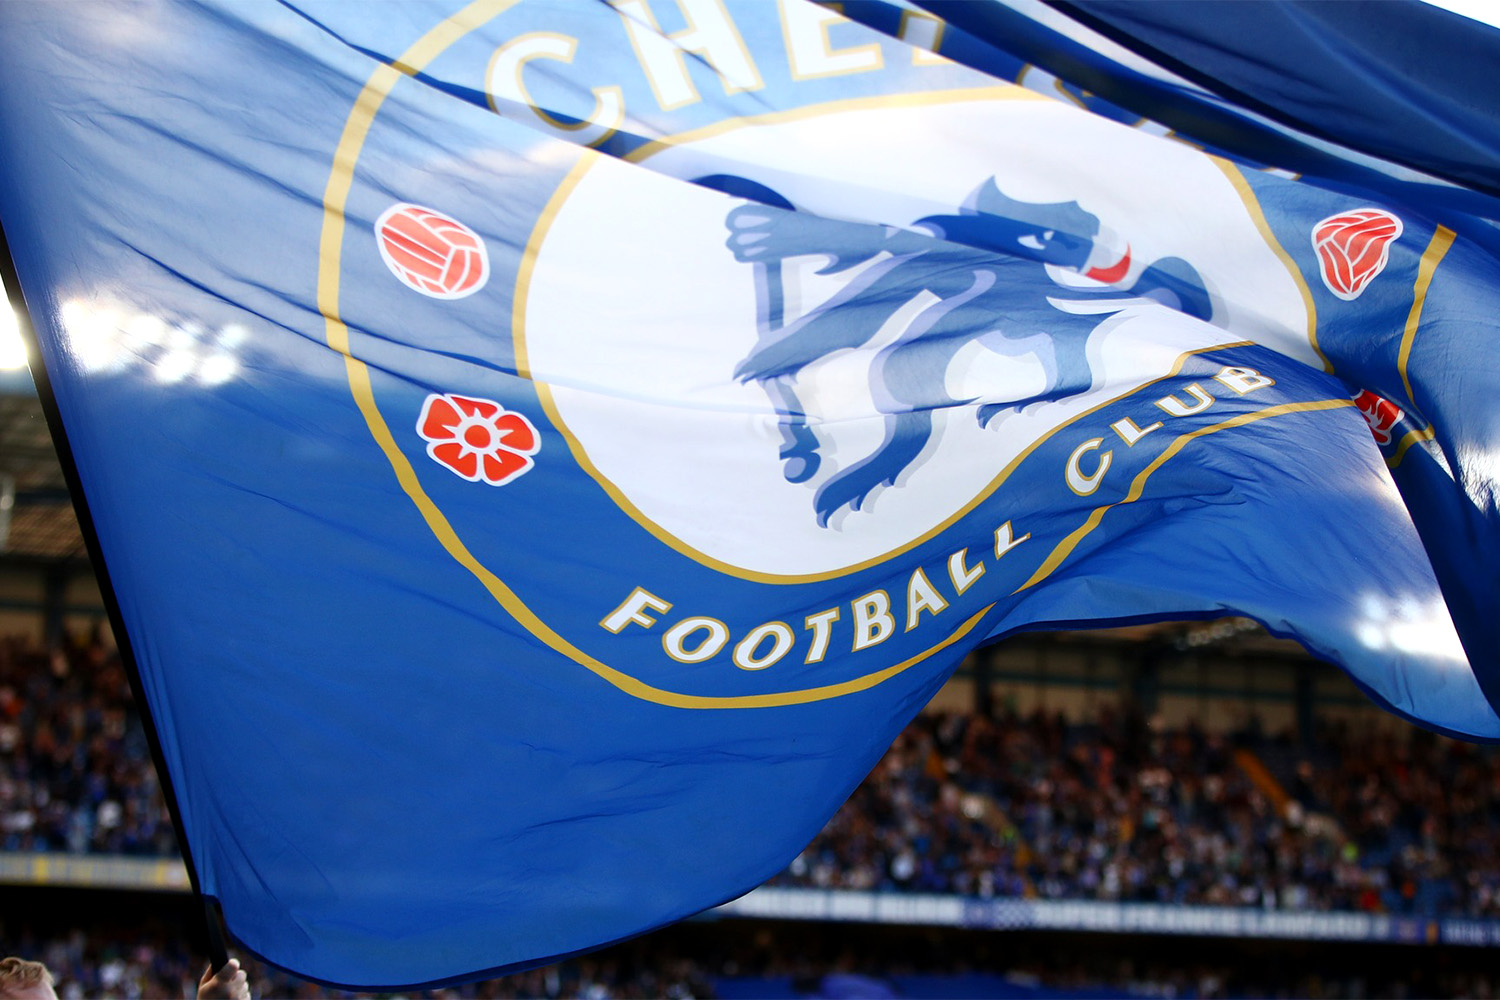 Chelsea Set to Begin New Era Under Todd Boehly